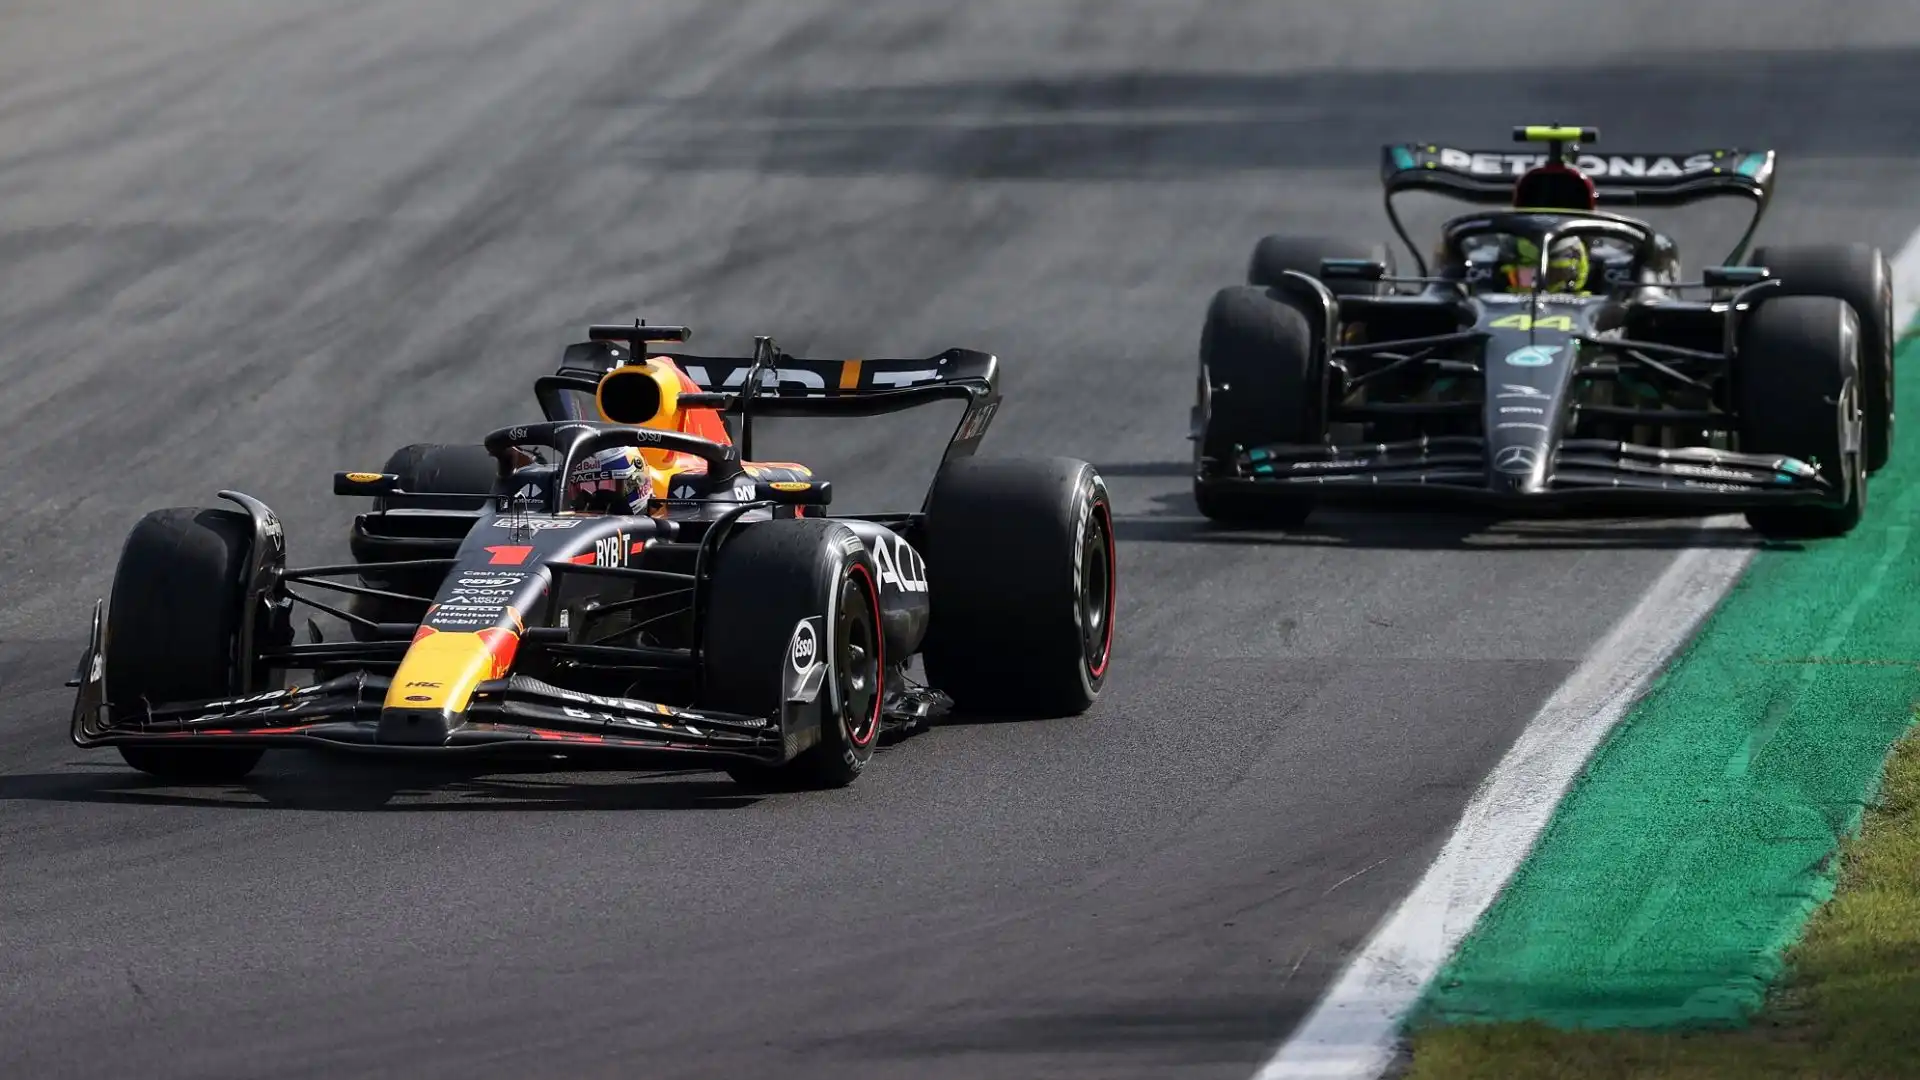 "La F1 resta un prodotto molto competitivo", sono le parole riportate da Motorsport